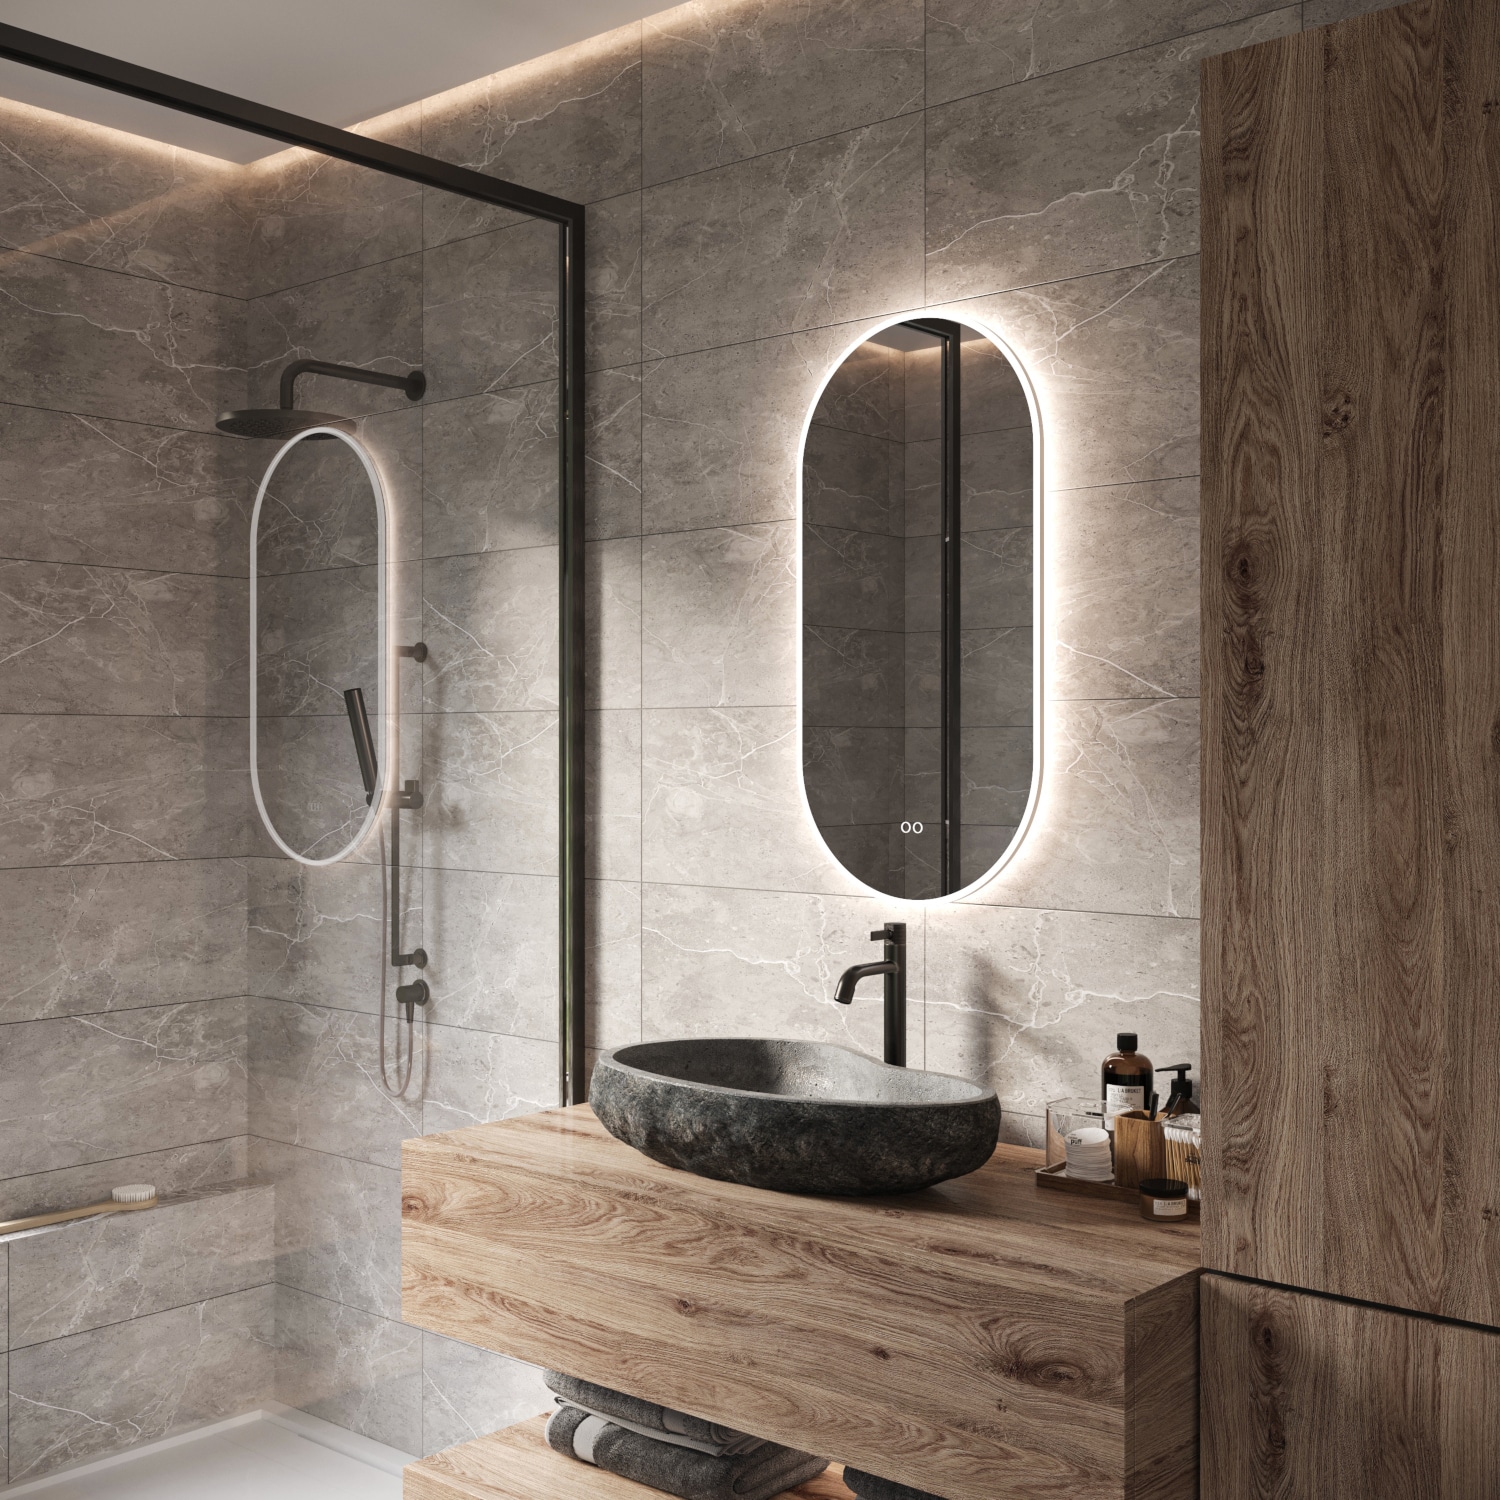 Ovale badkamerspiegel met LED verlichting, verwarming, en dimfunctie 45x90 cm -